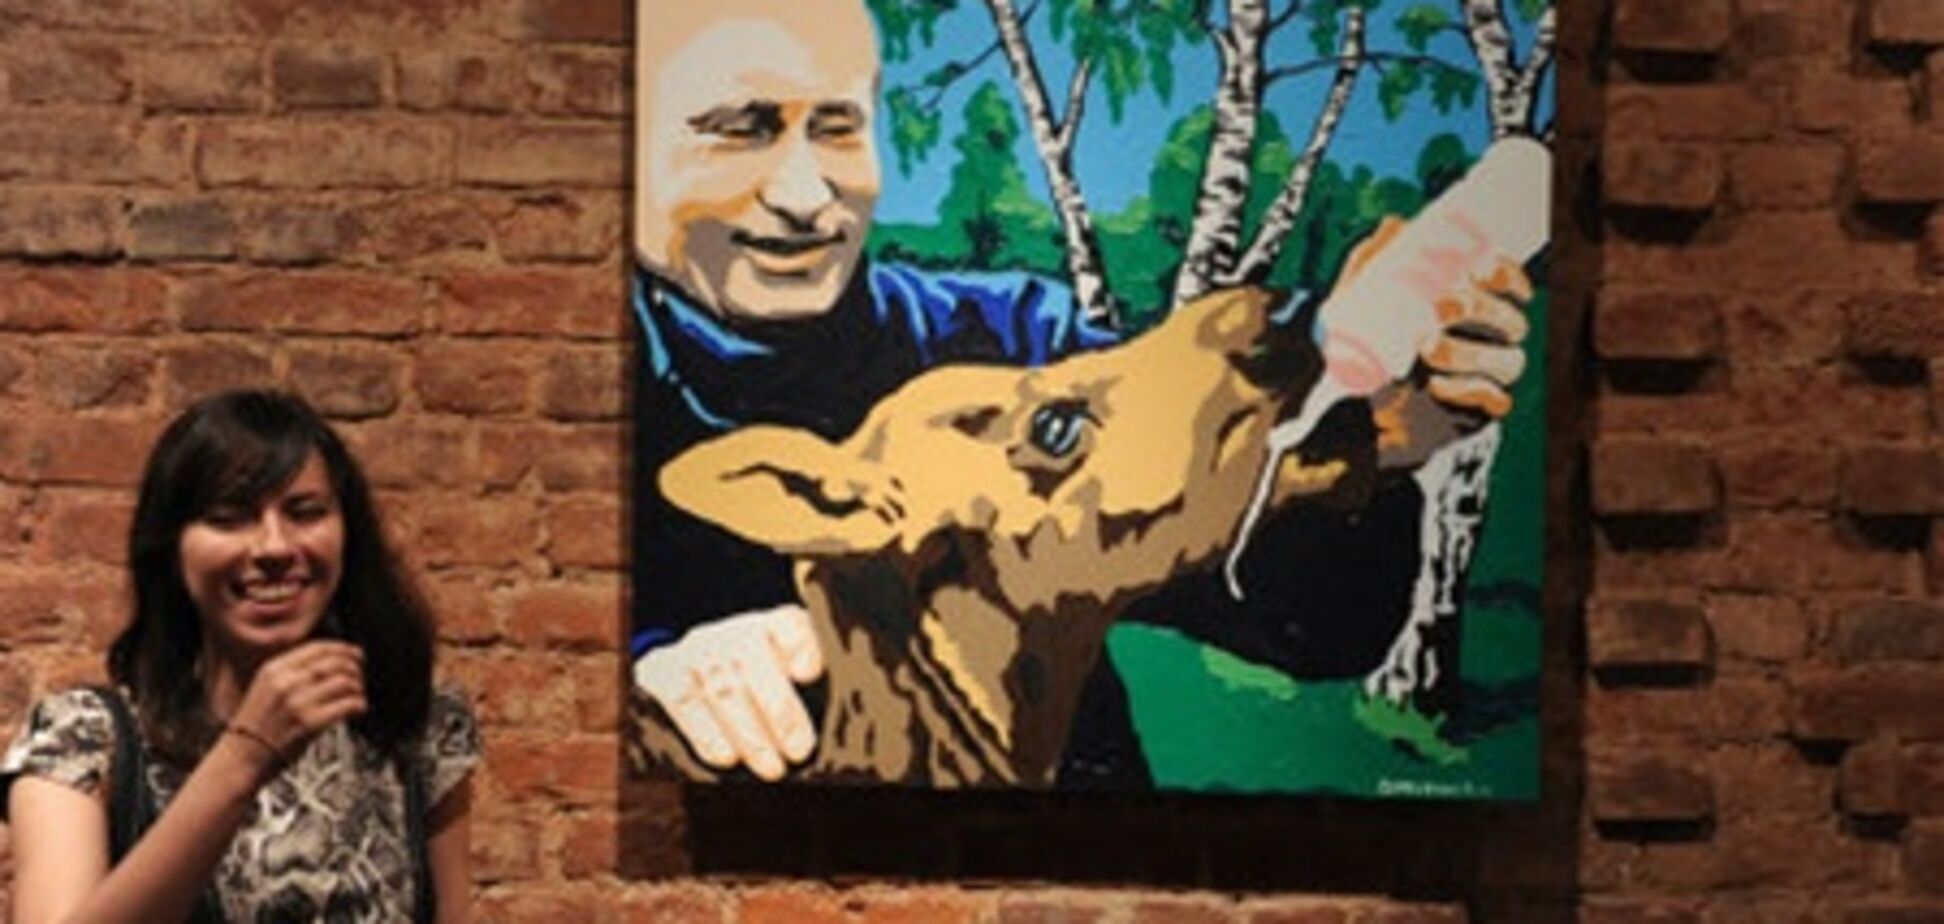 Виставка про 'доброго Путіні' викликала справжній фурор. Фото, відео